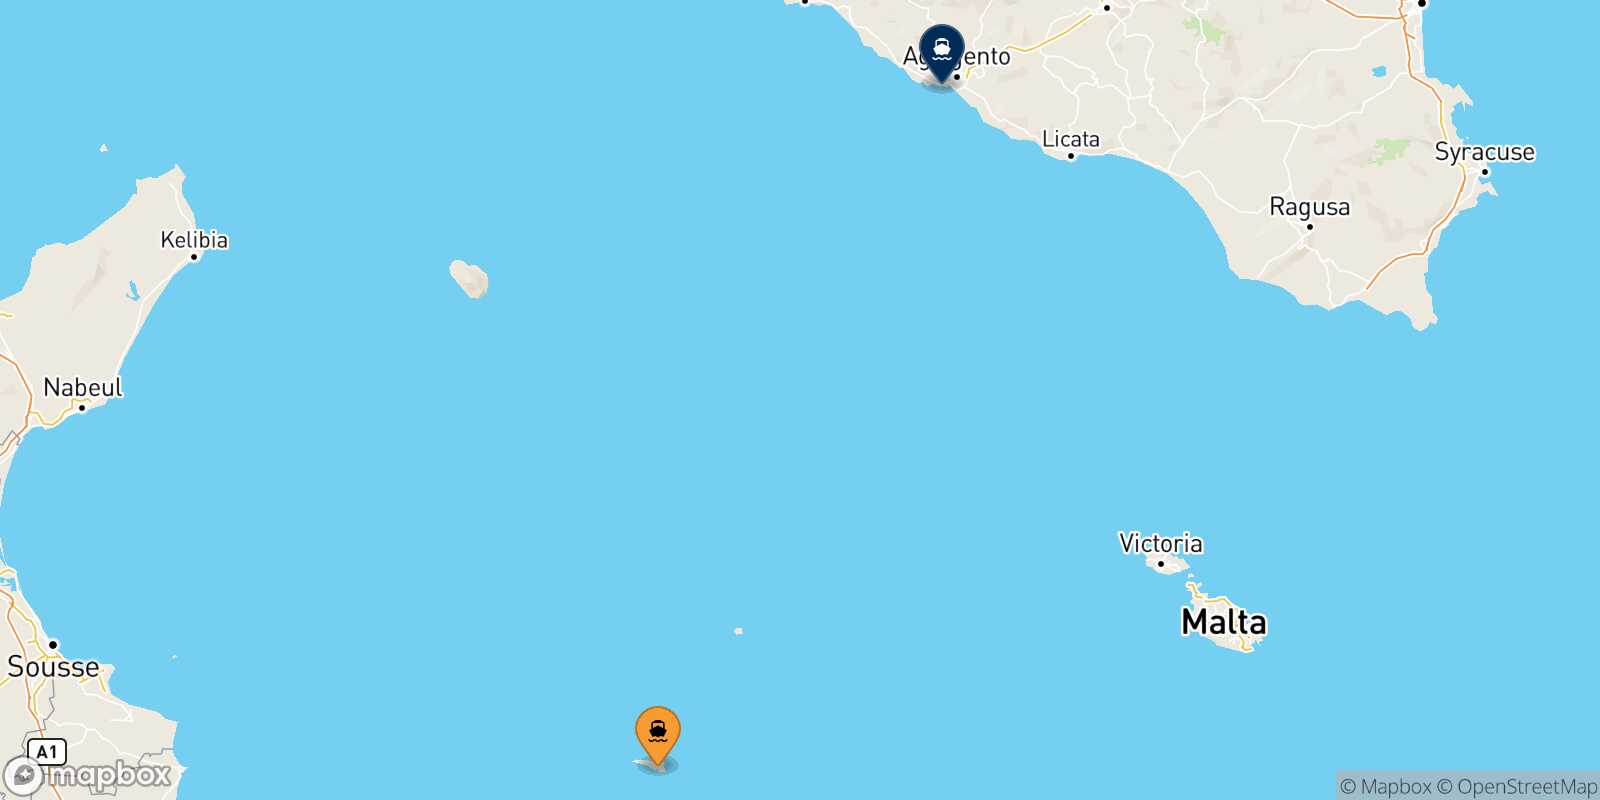 Mappa delle destinazioni raggiungibili da Lampedusa